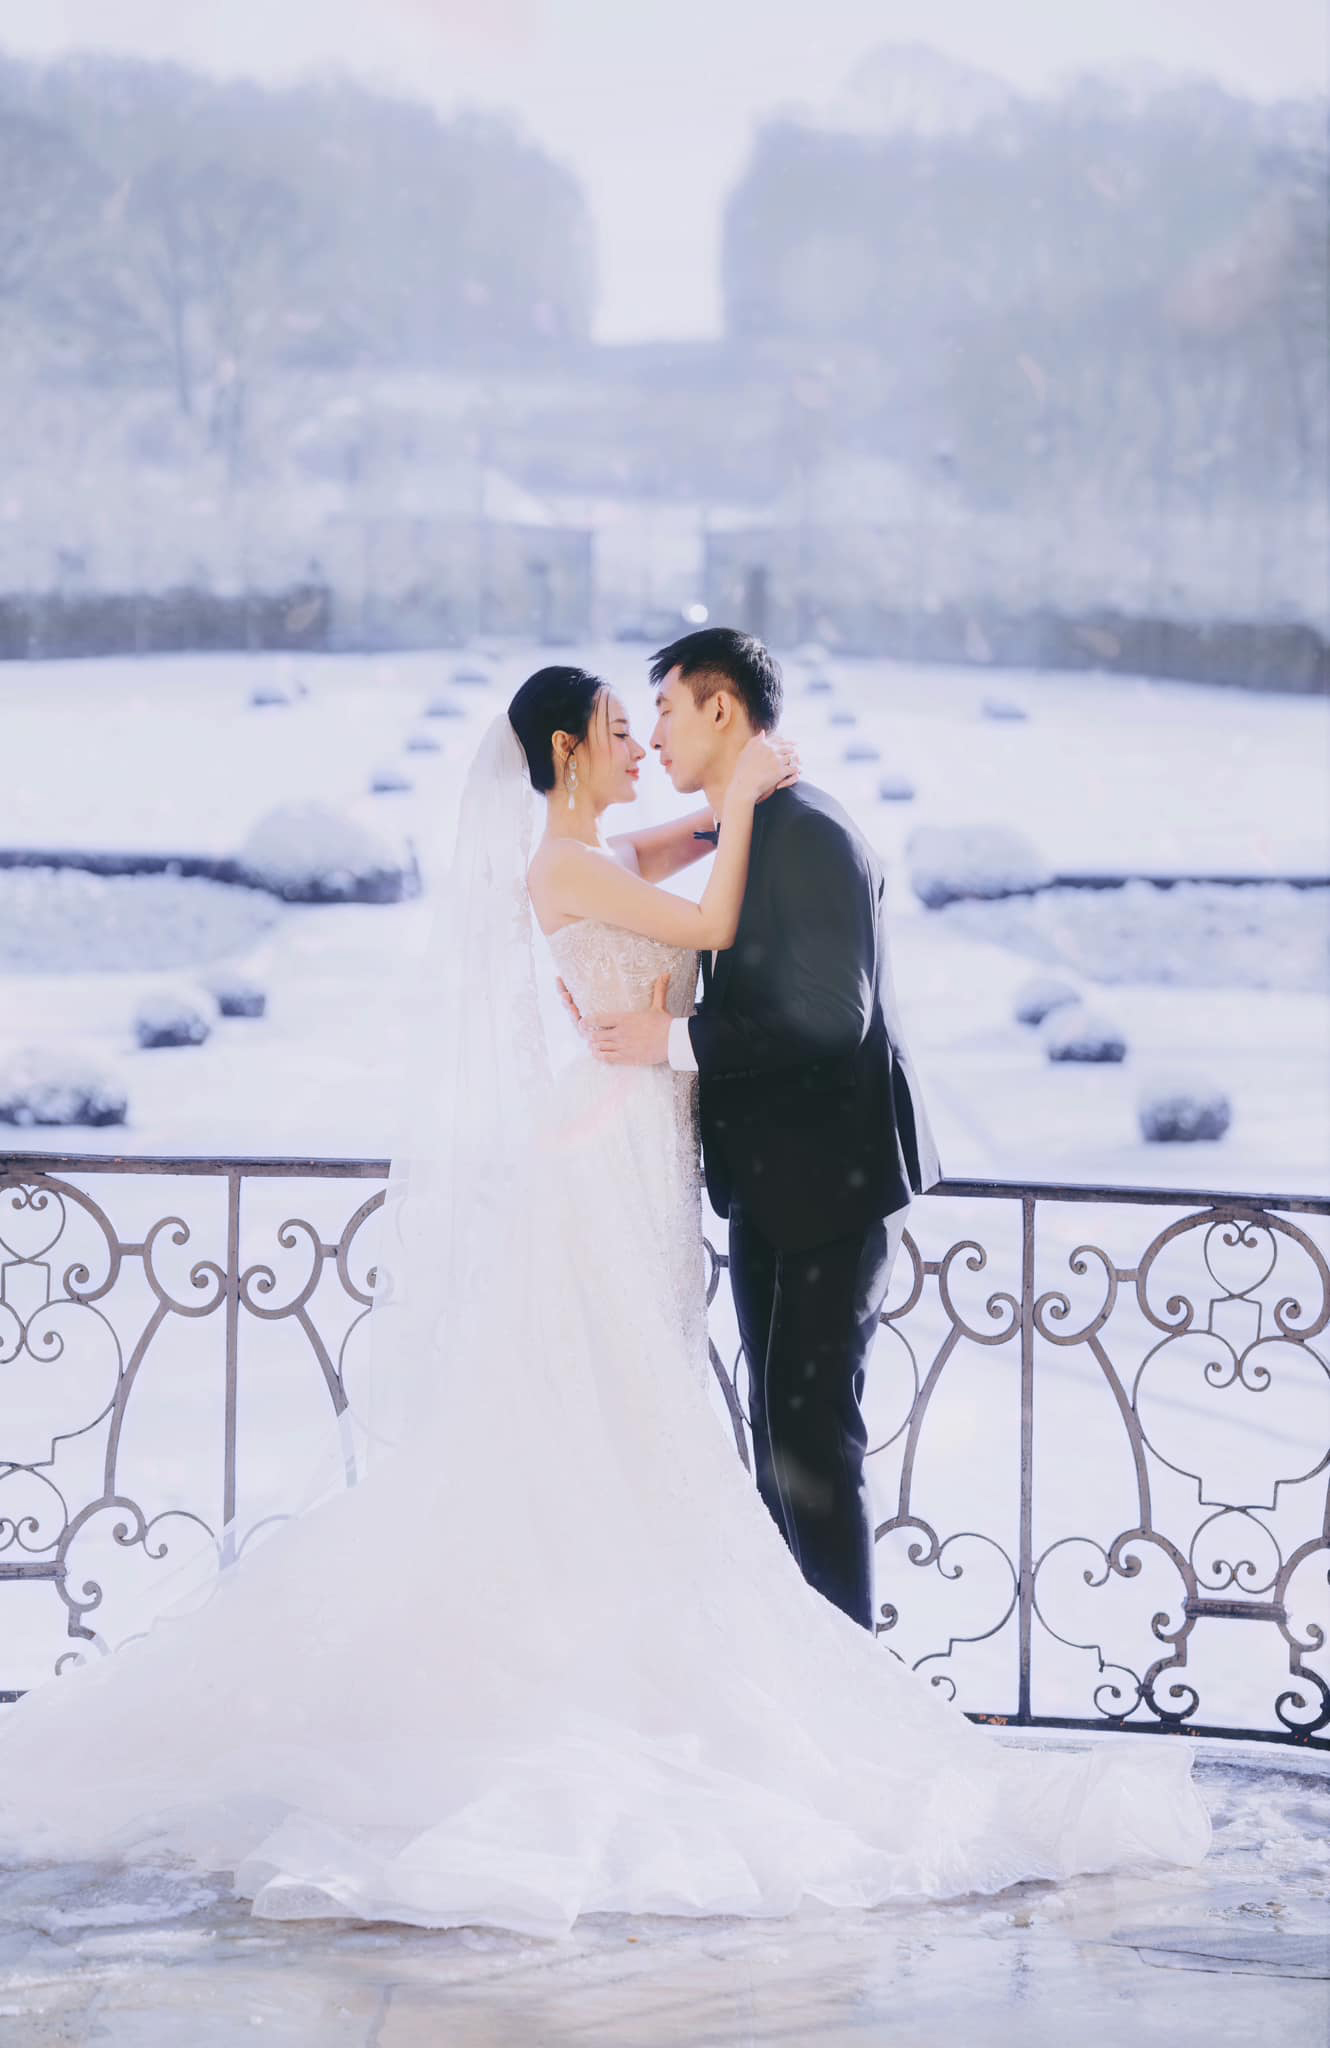 Khung cảnh tuyết rơi khiến bộ ảnh cưới của Midu thêm lung linh.